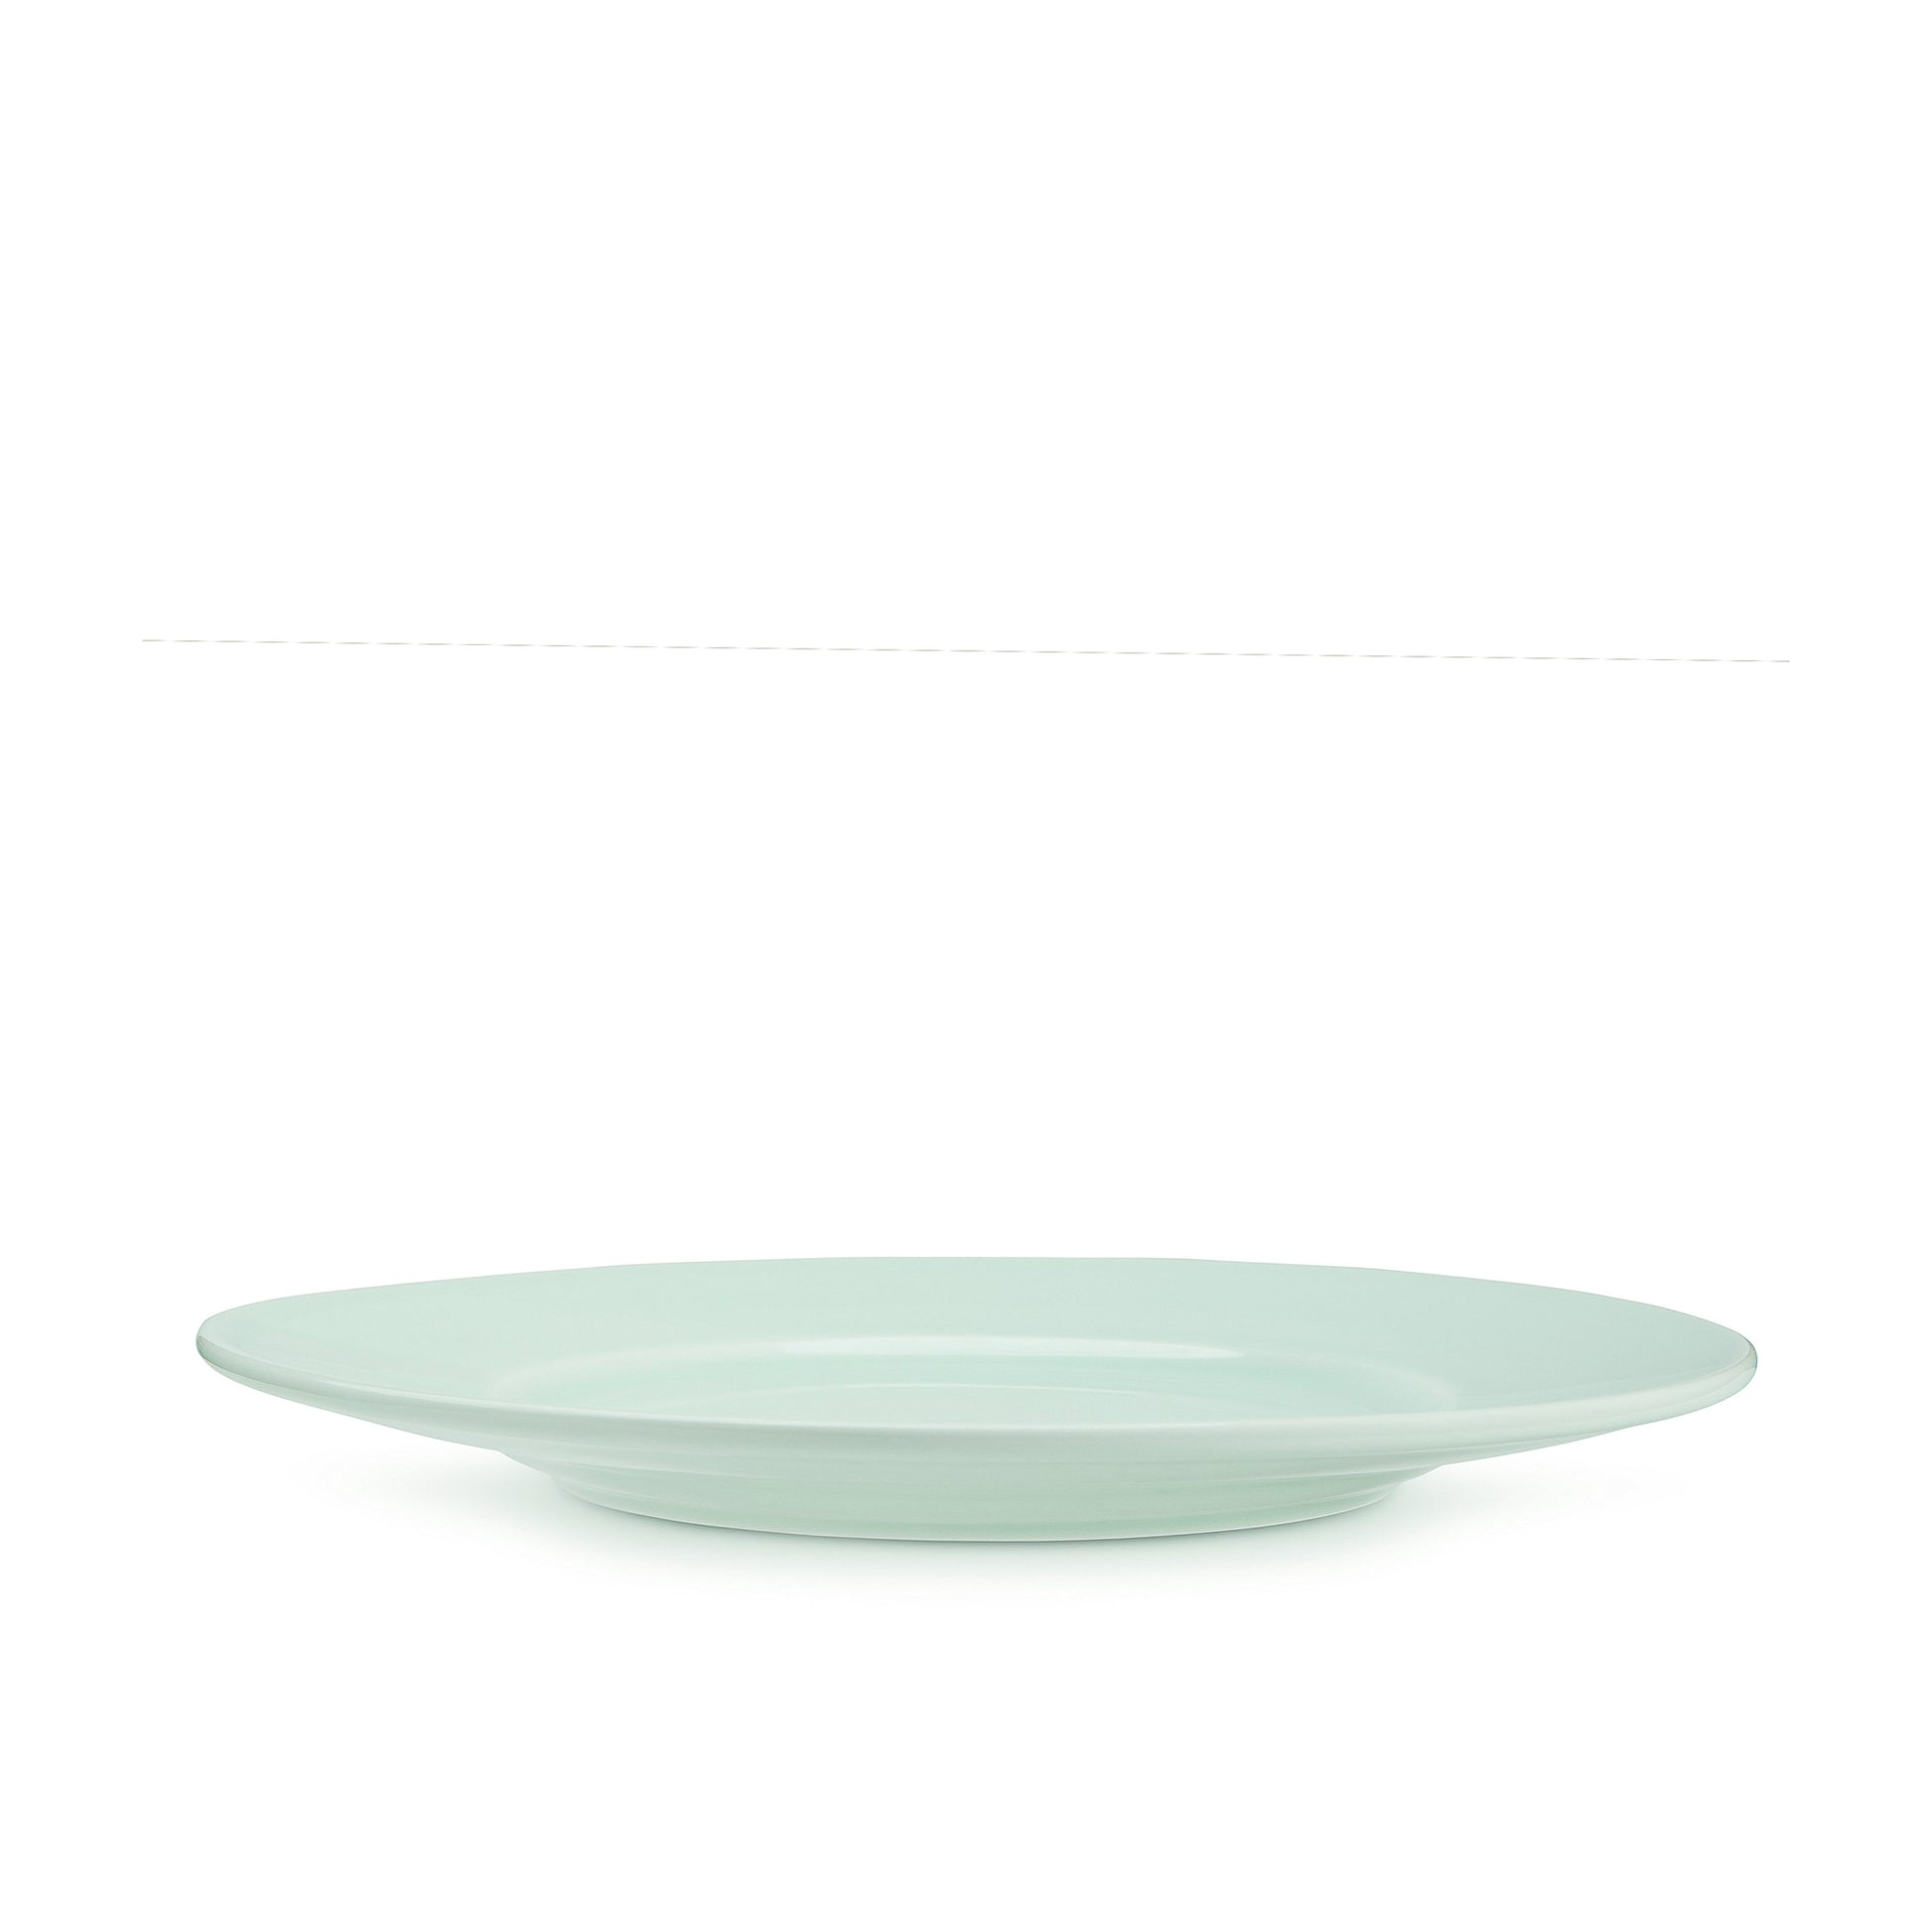 11 3/4" green celadon porcelain dinner dinner plate, horizontal view, media 4 of 4